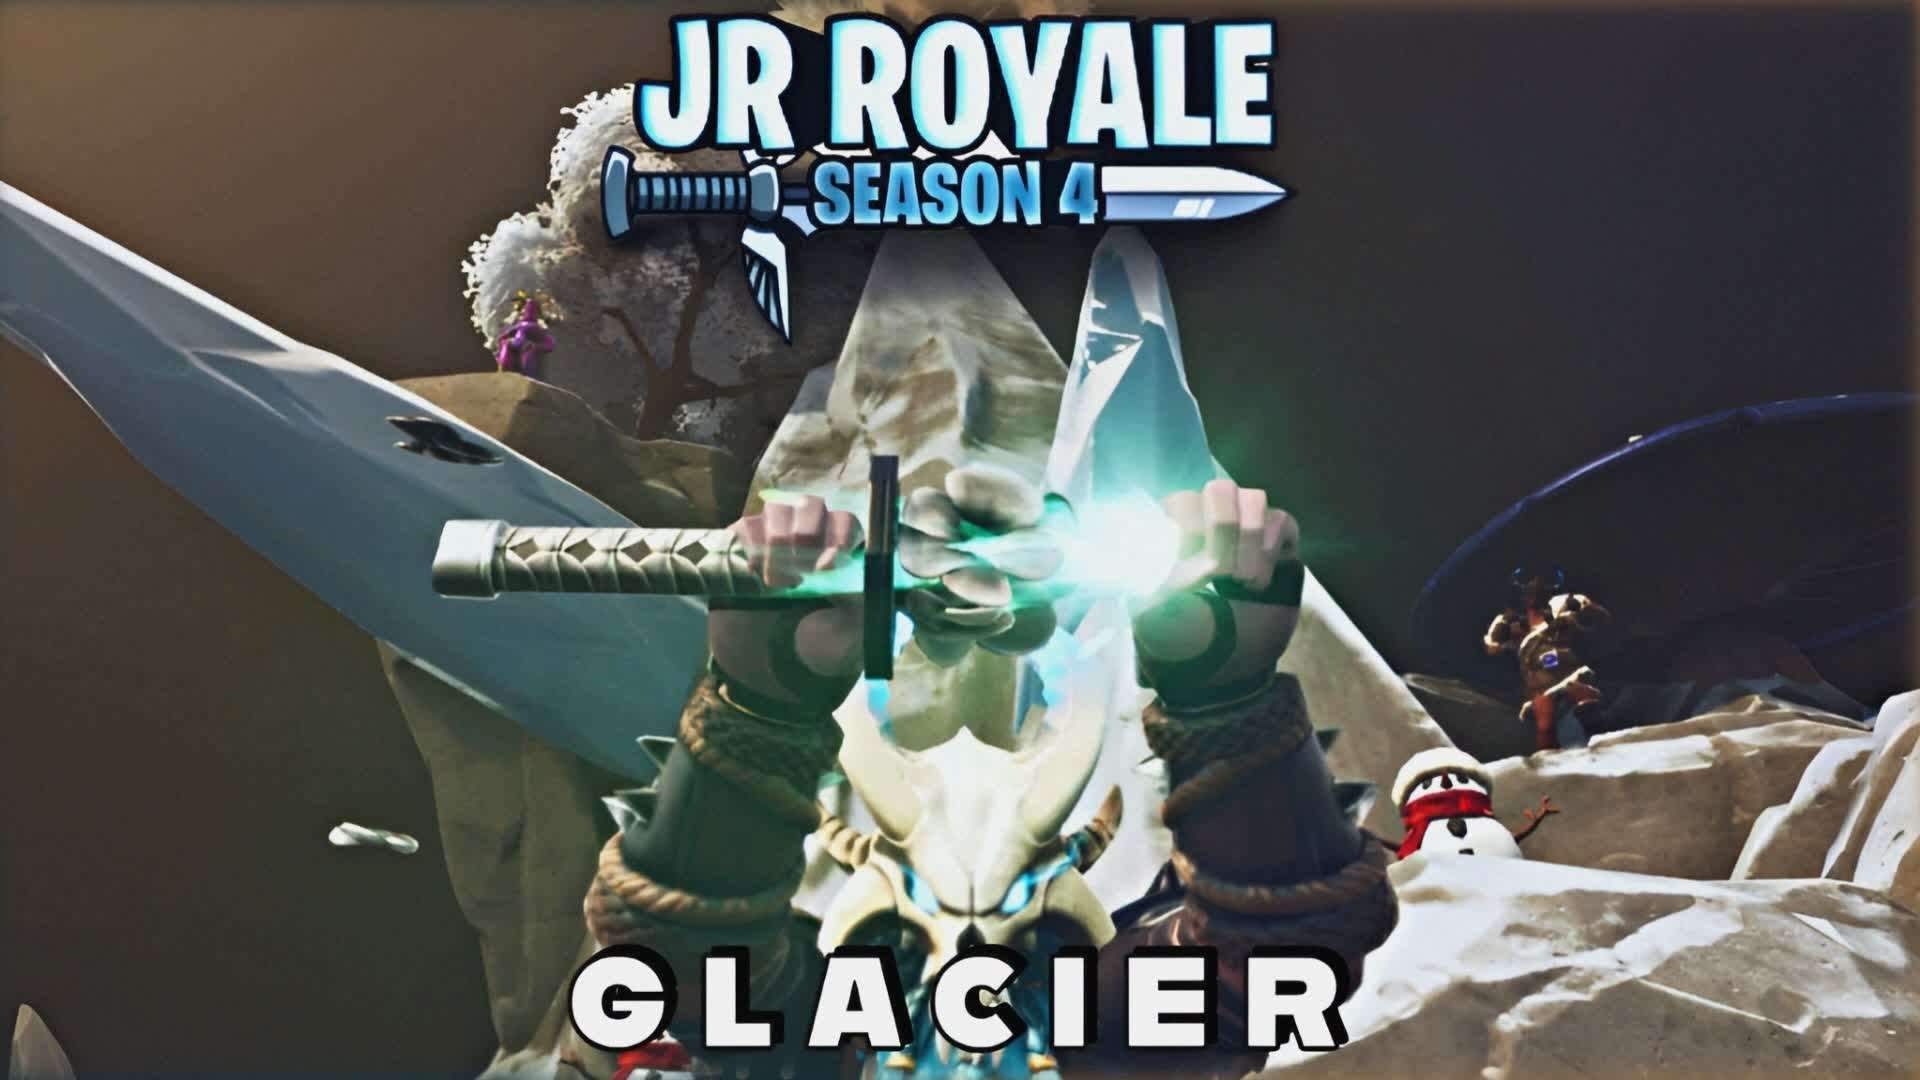 ☃Jr Royale Season 4: Glacier❄